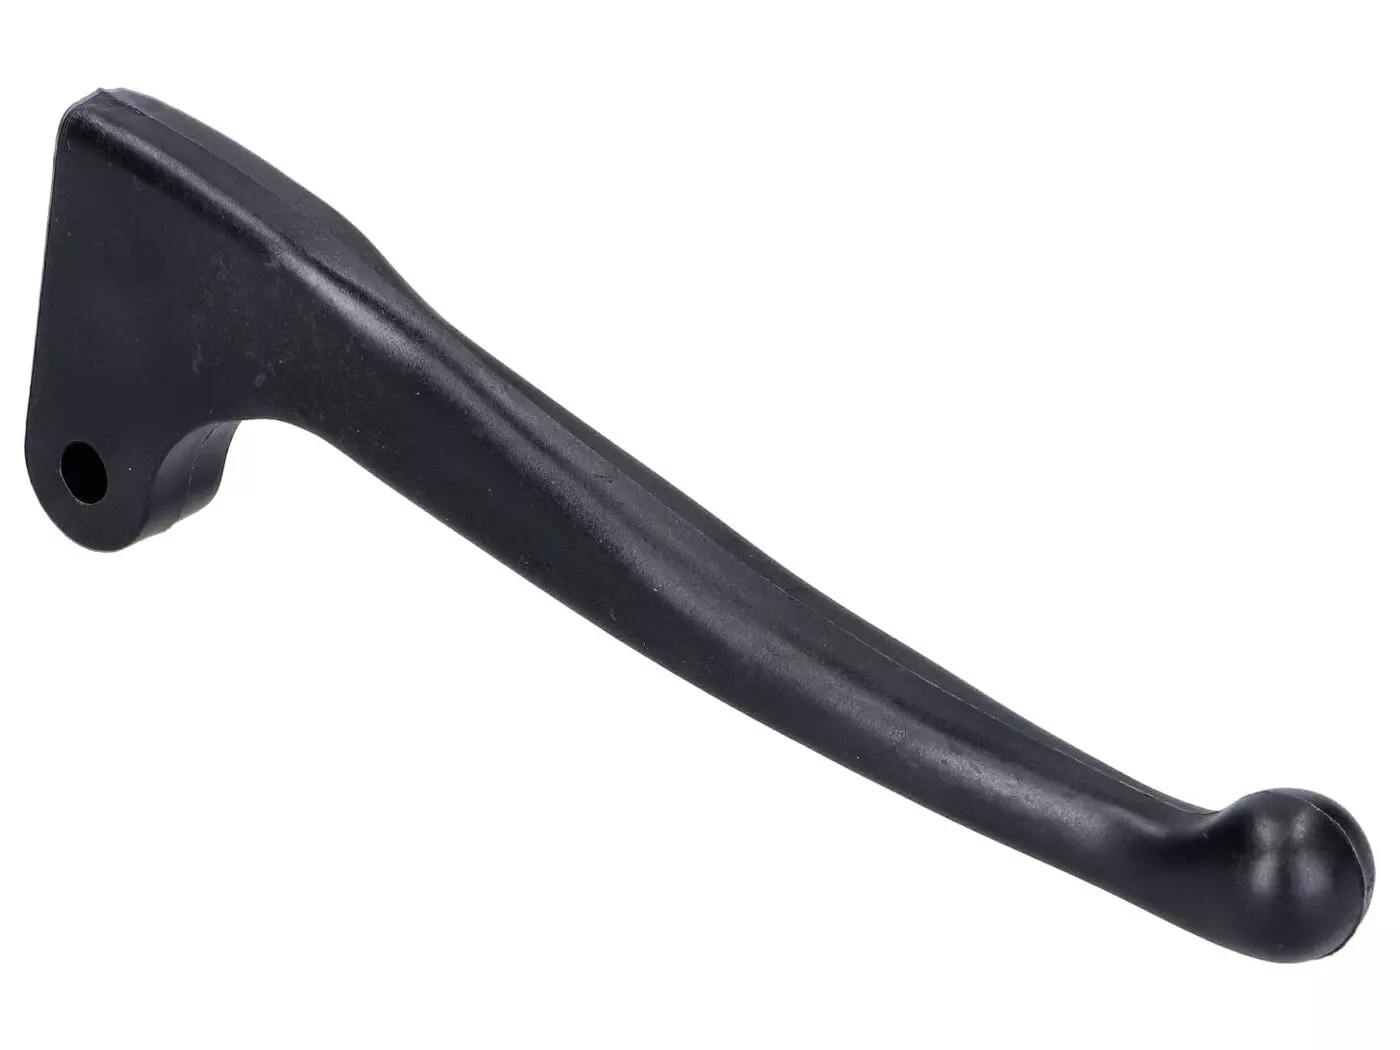 Hand Brake Lever W/o Mounting, Black Plastic For Simson S50, KR51/1, KR51/2 Schwalbe, SR4-2 Star